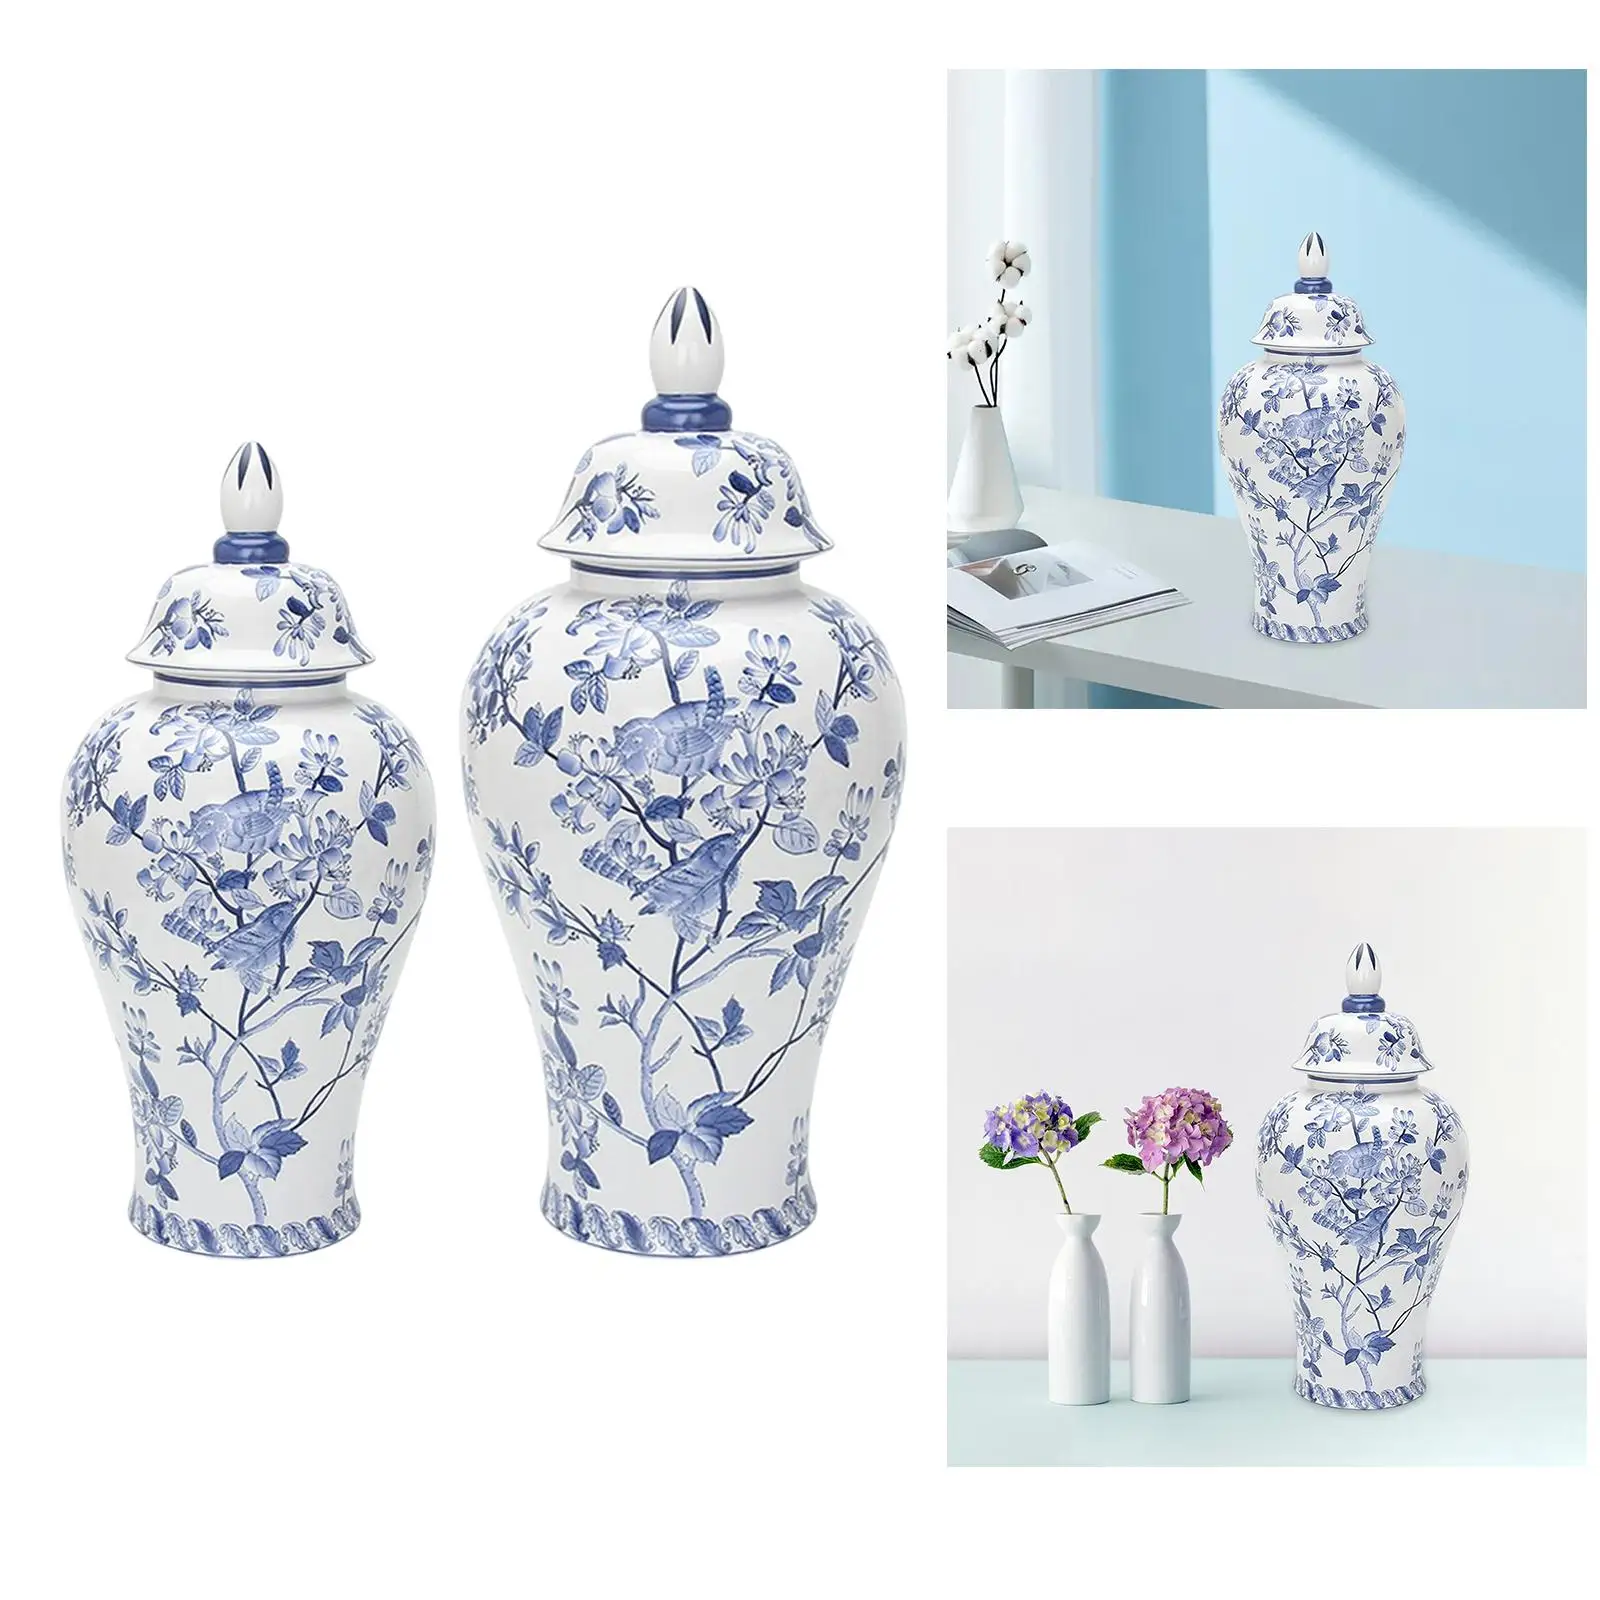 Porcelain Ginger Jar Tank Storage Jar Ceramic Flower Vase for Dining Table